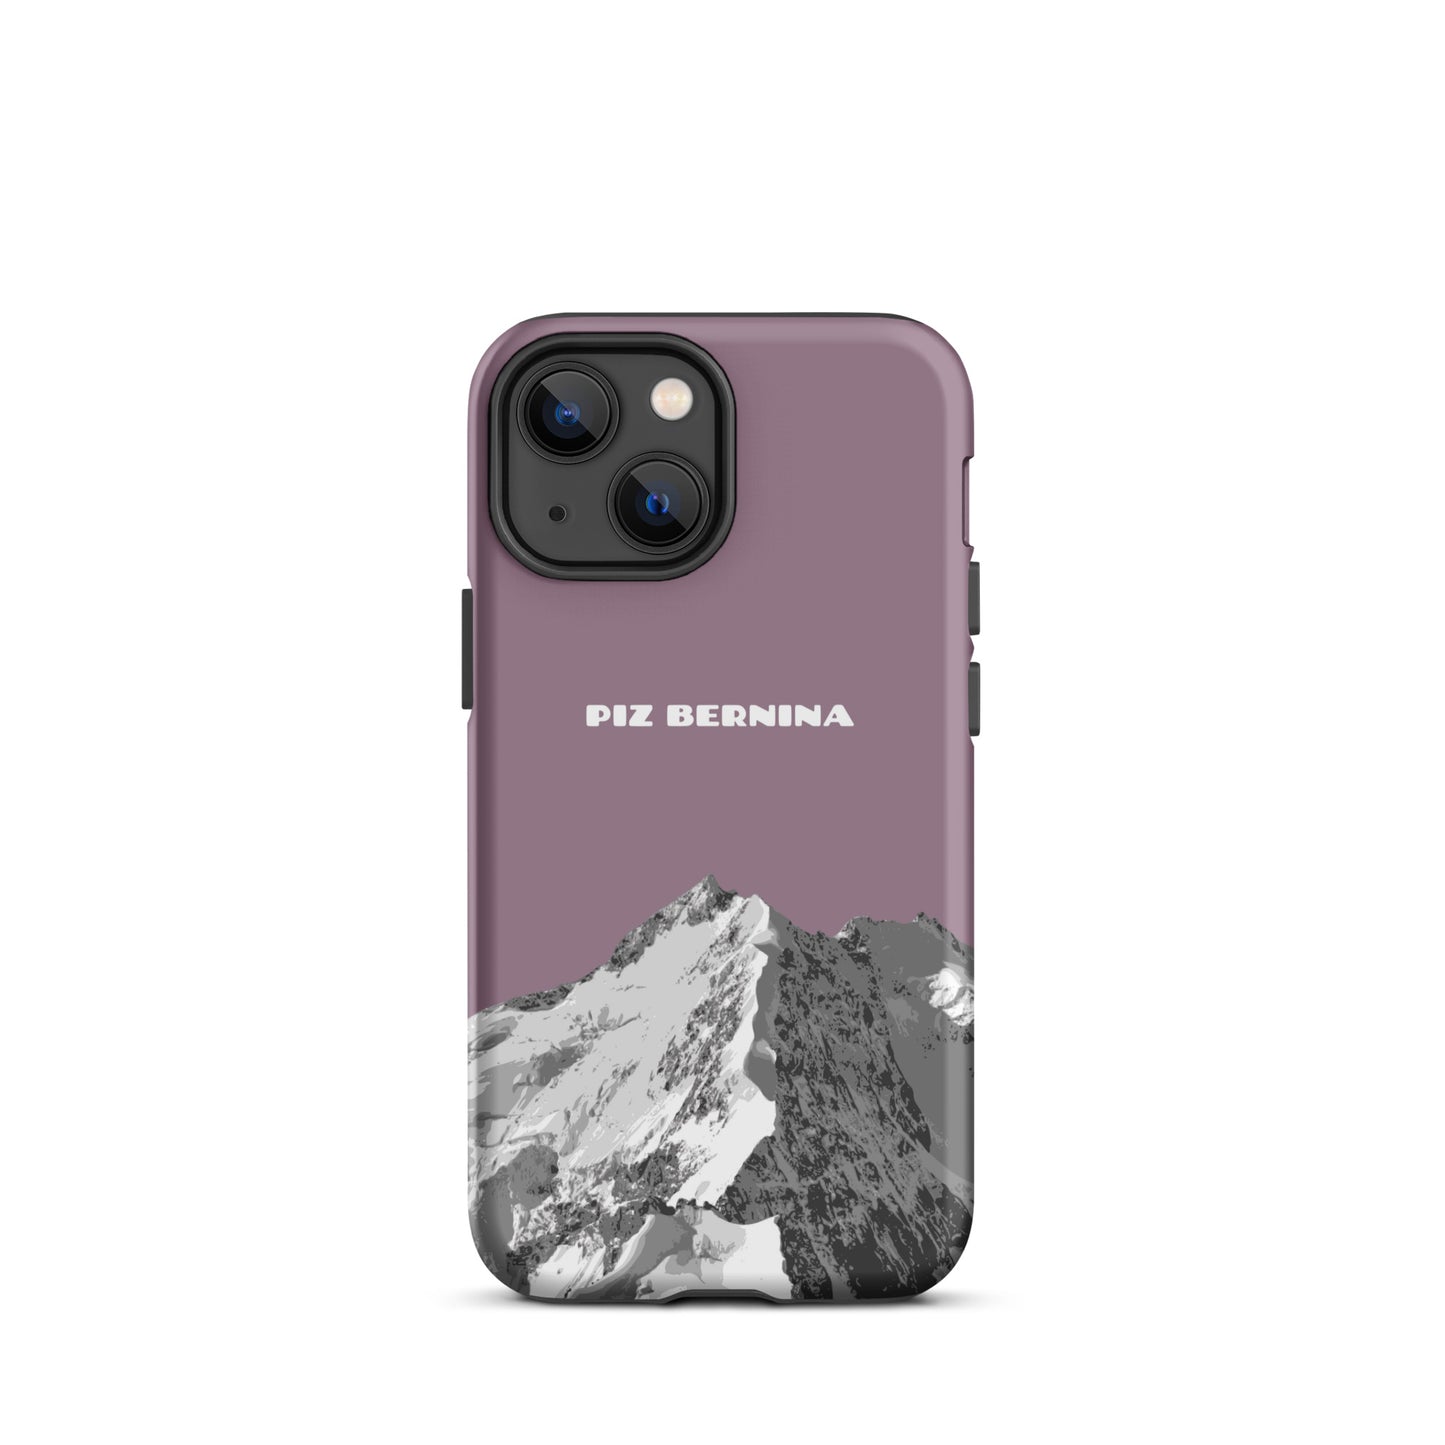 Hülle für das iPhone 13 Mini von Apple in der Farbe Pastellviolett, dass den Piz Bernina in Graubünden zeigt.